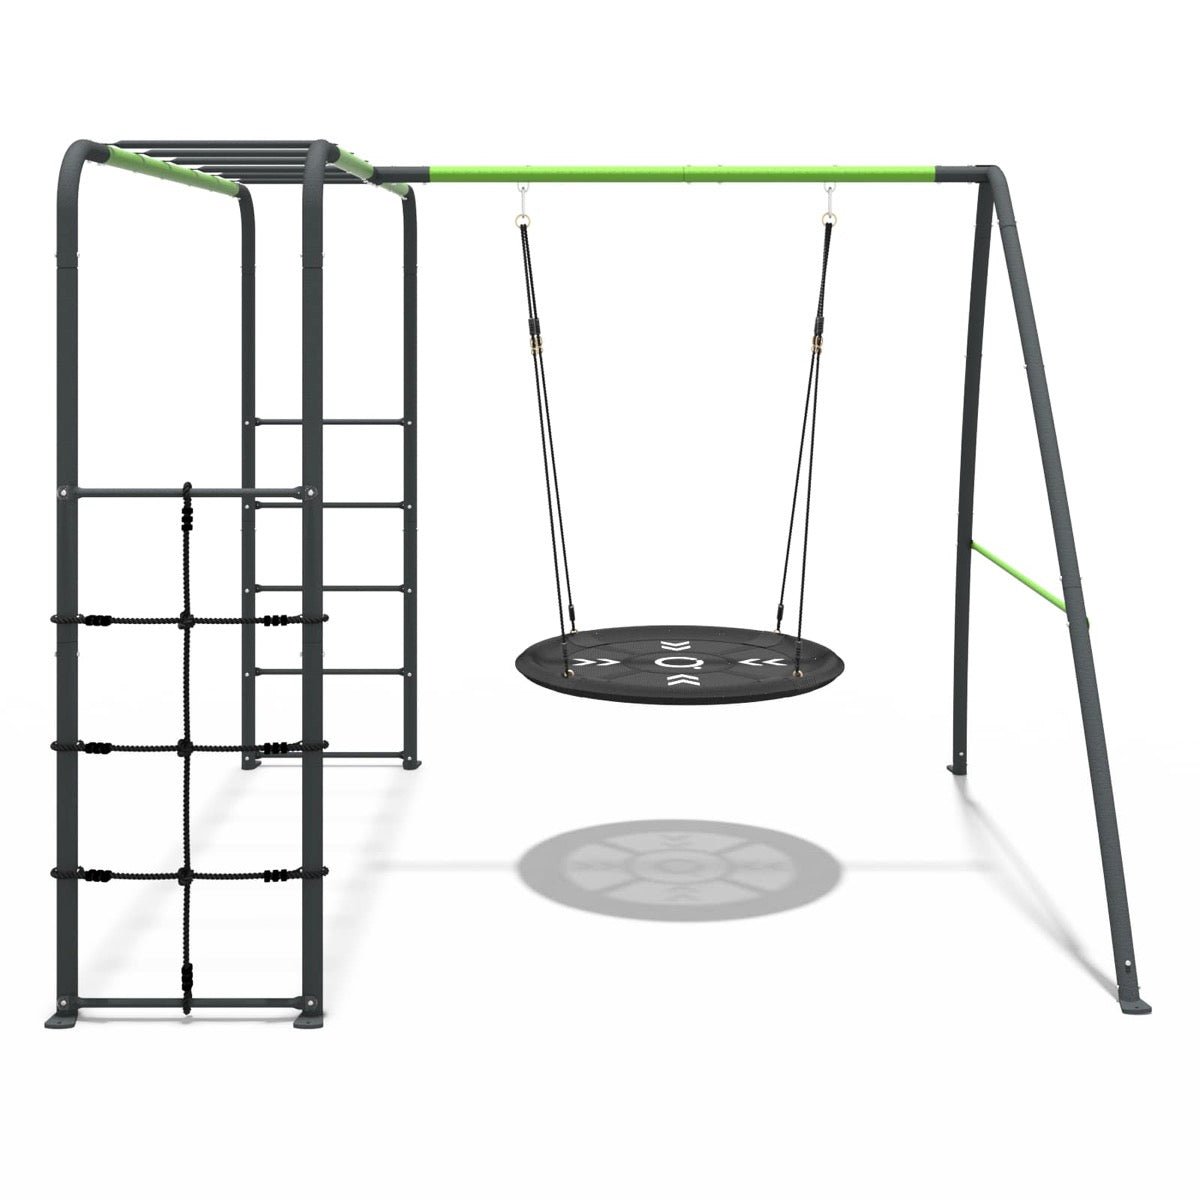 Rebo Steel Series Metal Swing Set with Monkey Bars - Nest Swing Green